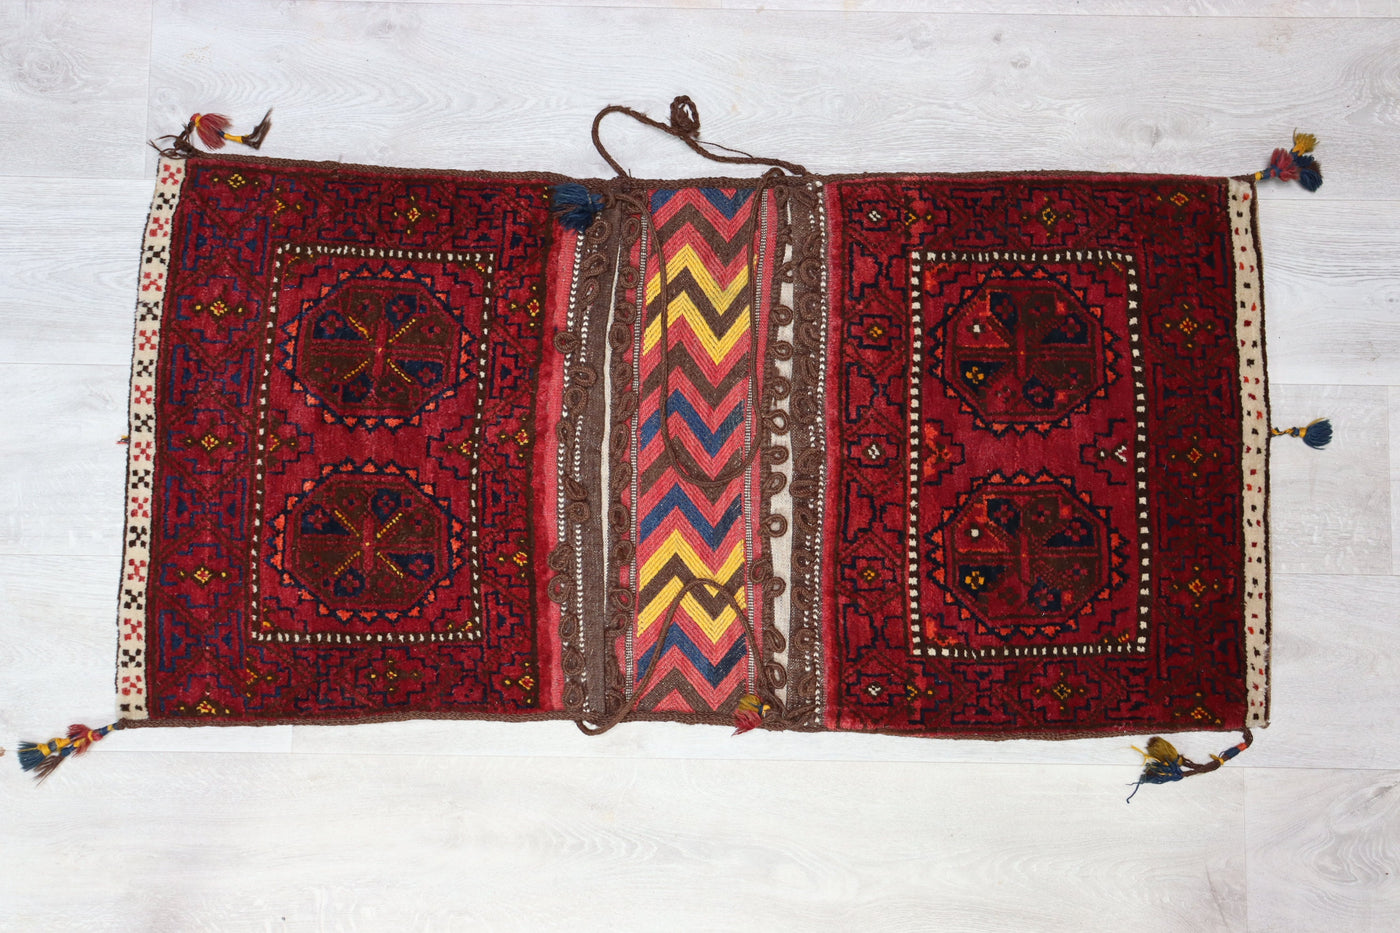 119x60 cm Antik orient Turkmen Teppich nomaden sitzkissen cushion Doppeltasche Satteltasche (Khorjin) Torba Bukhara Turkmenistan Nr: 22/18  Orientsbazar   